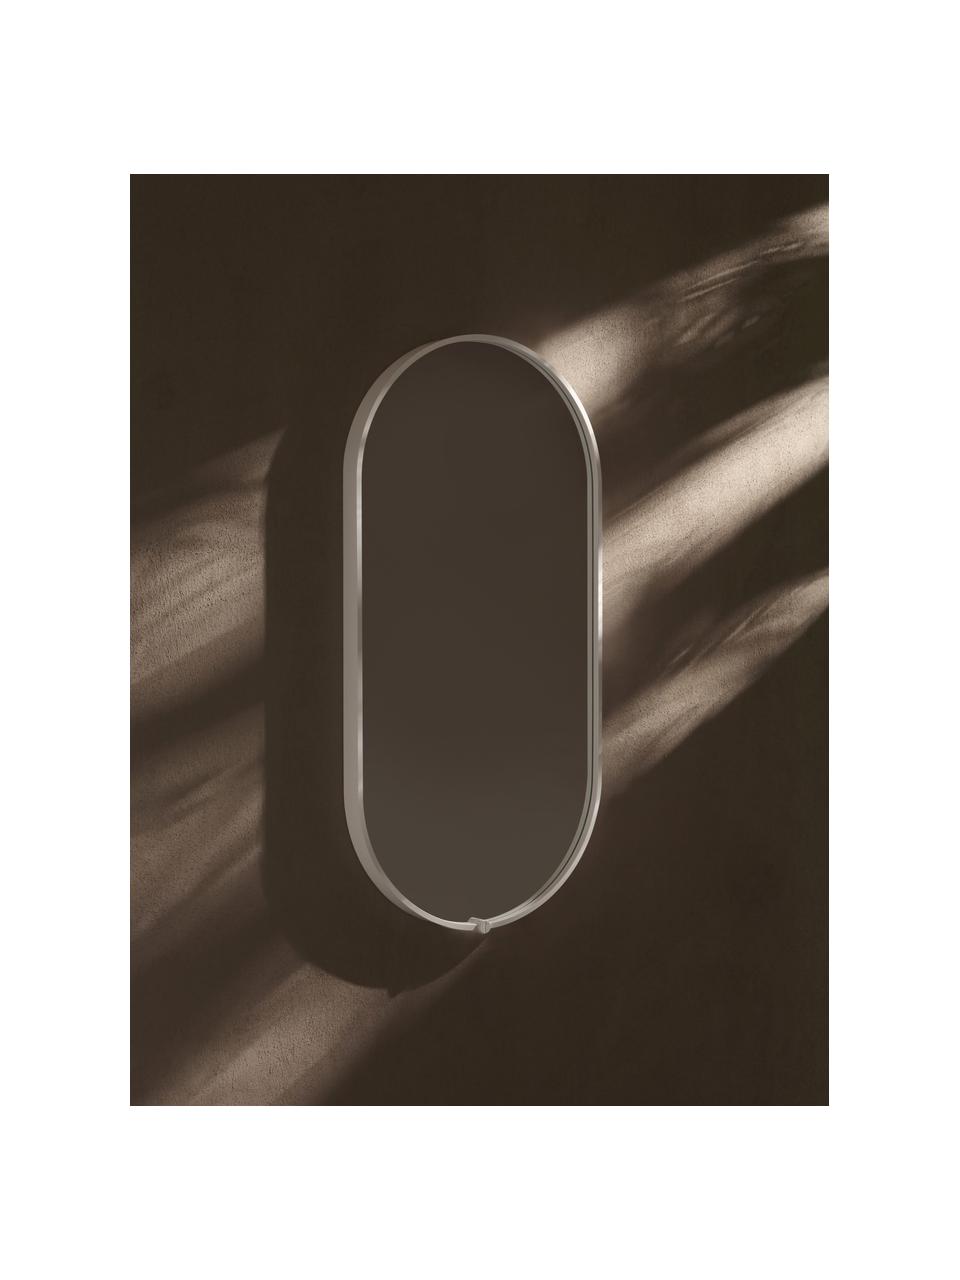 Ovaler Wandspiegel Avior mit LED-Beleuchtung, Rahmen: Aluminium, beschichtet, Spiegelfläche: Spiegelglas, Weiss, B 45 x H 90 cm